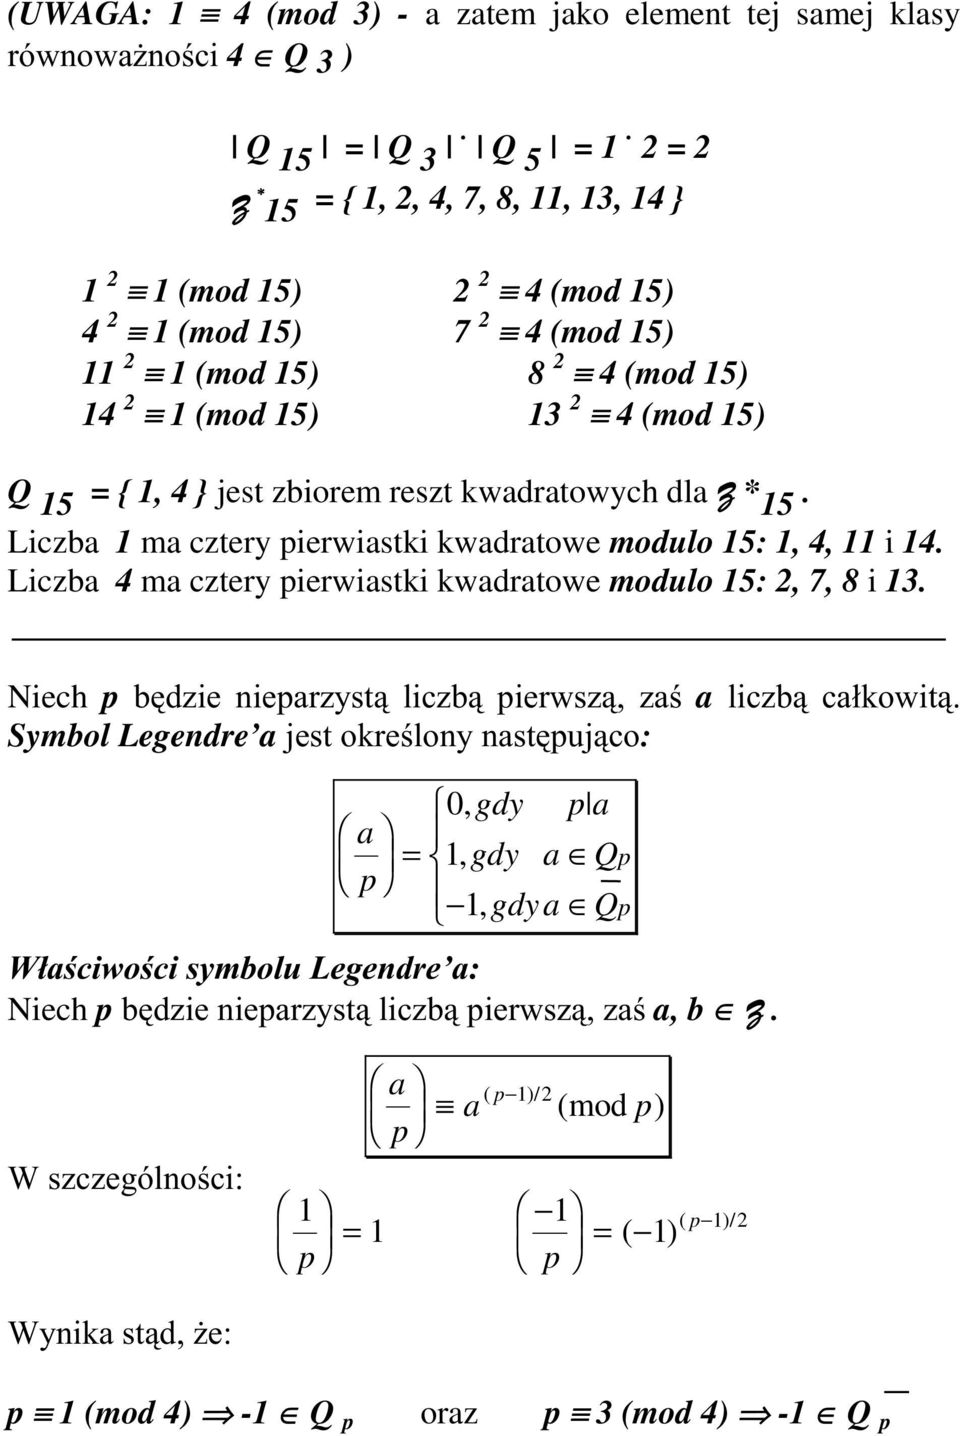 kwadratowych dla =* 15. Liczba 1 ma cztery pierwiastki kwadratowe modulo 15: 1, 4, 11 i 14. Liczba 4 ma cztery pierwiastki kwadratowe modulo 15: 2, 7, 8 i 13.